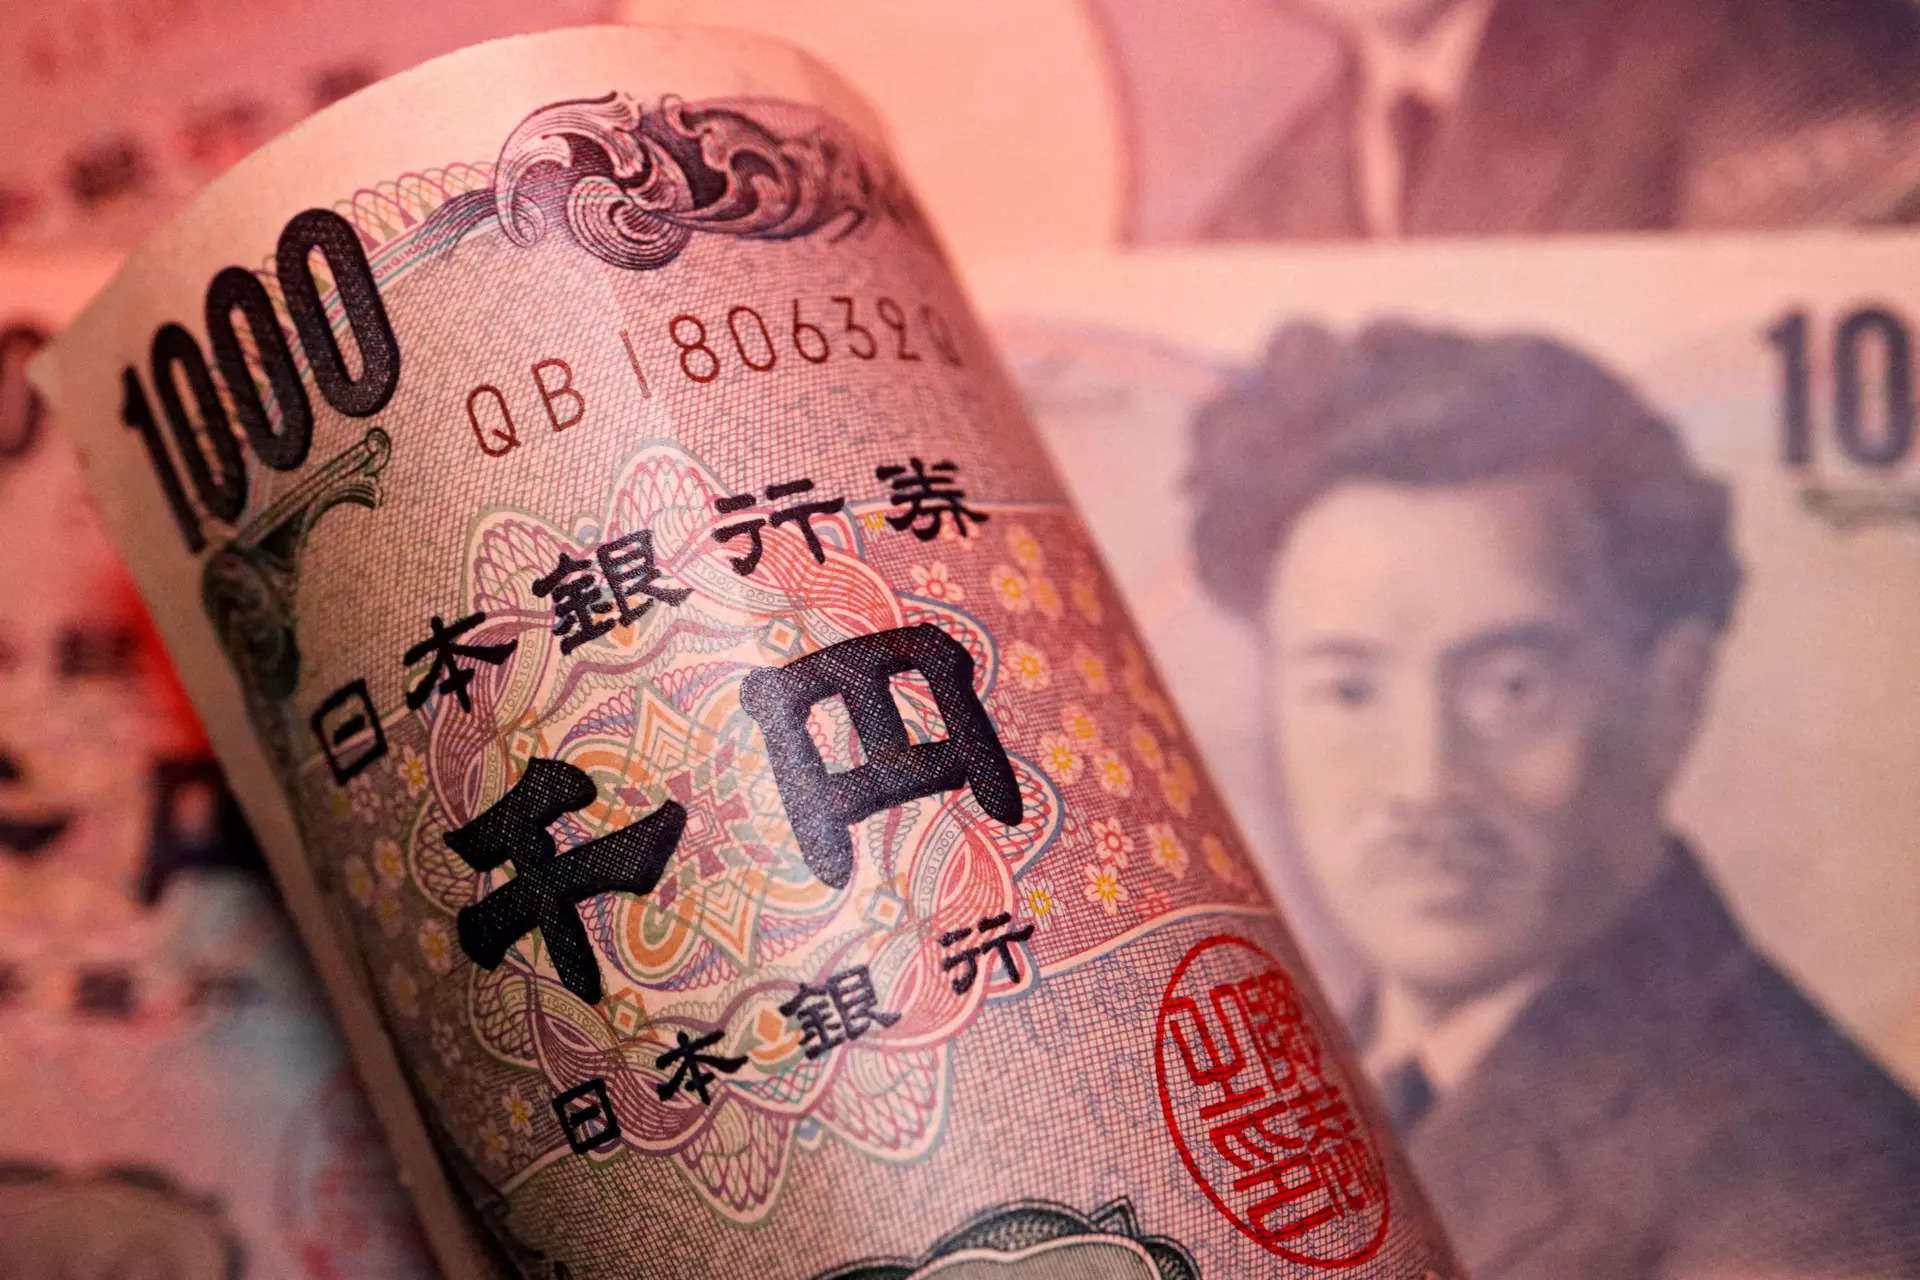 Yen volatile after BOJ raises rates; Aussie set for monthly loss 